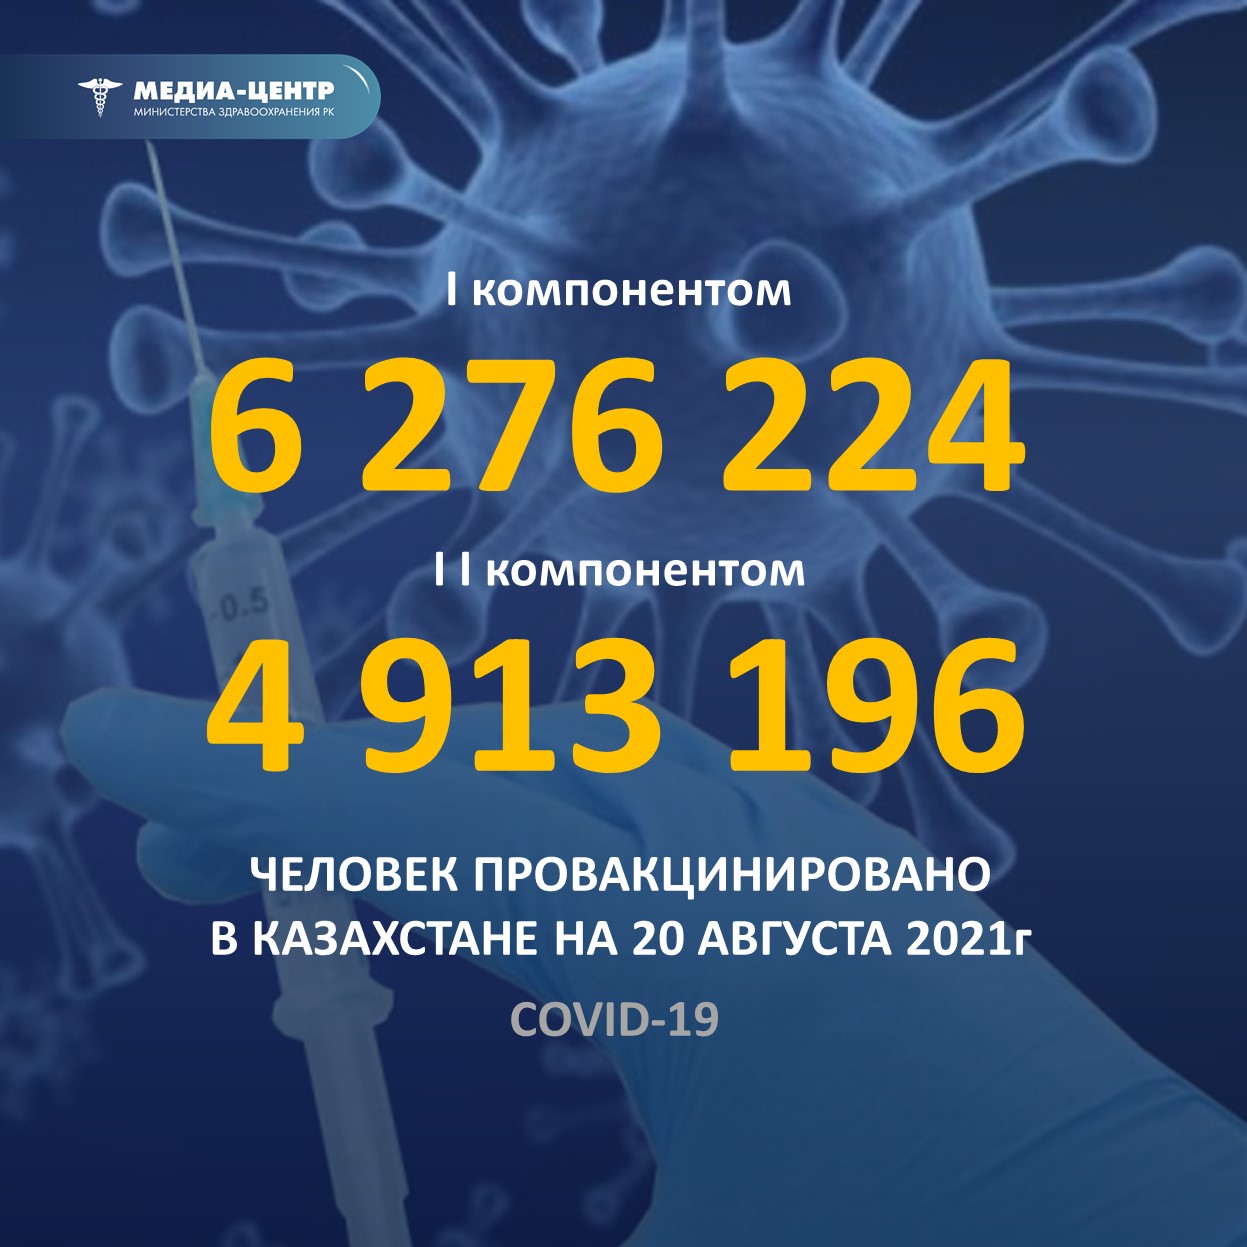 I компонентом 6 276 224 человек провакцинировано в Казахстане на 20 августа 2021 г, II компонентом 4 913 196 человек.